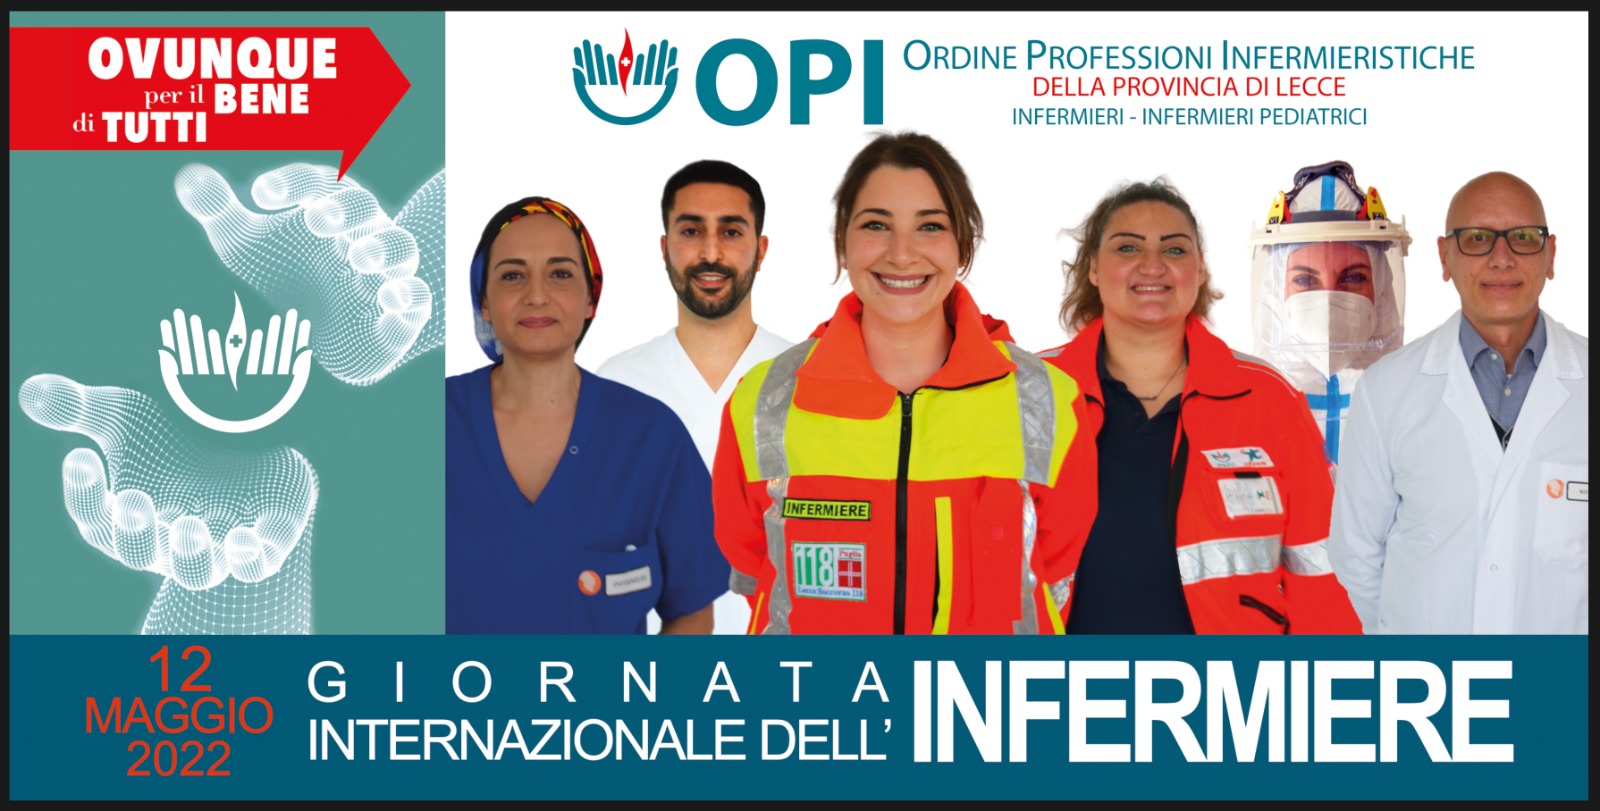 12 maggio: così gli OPI celebrano la Giornata internazionale dell'infermiere  - fnopi